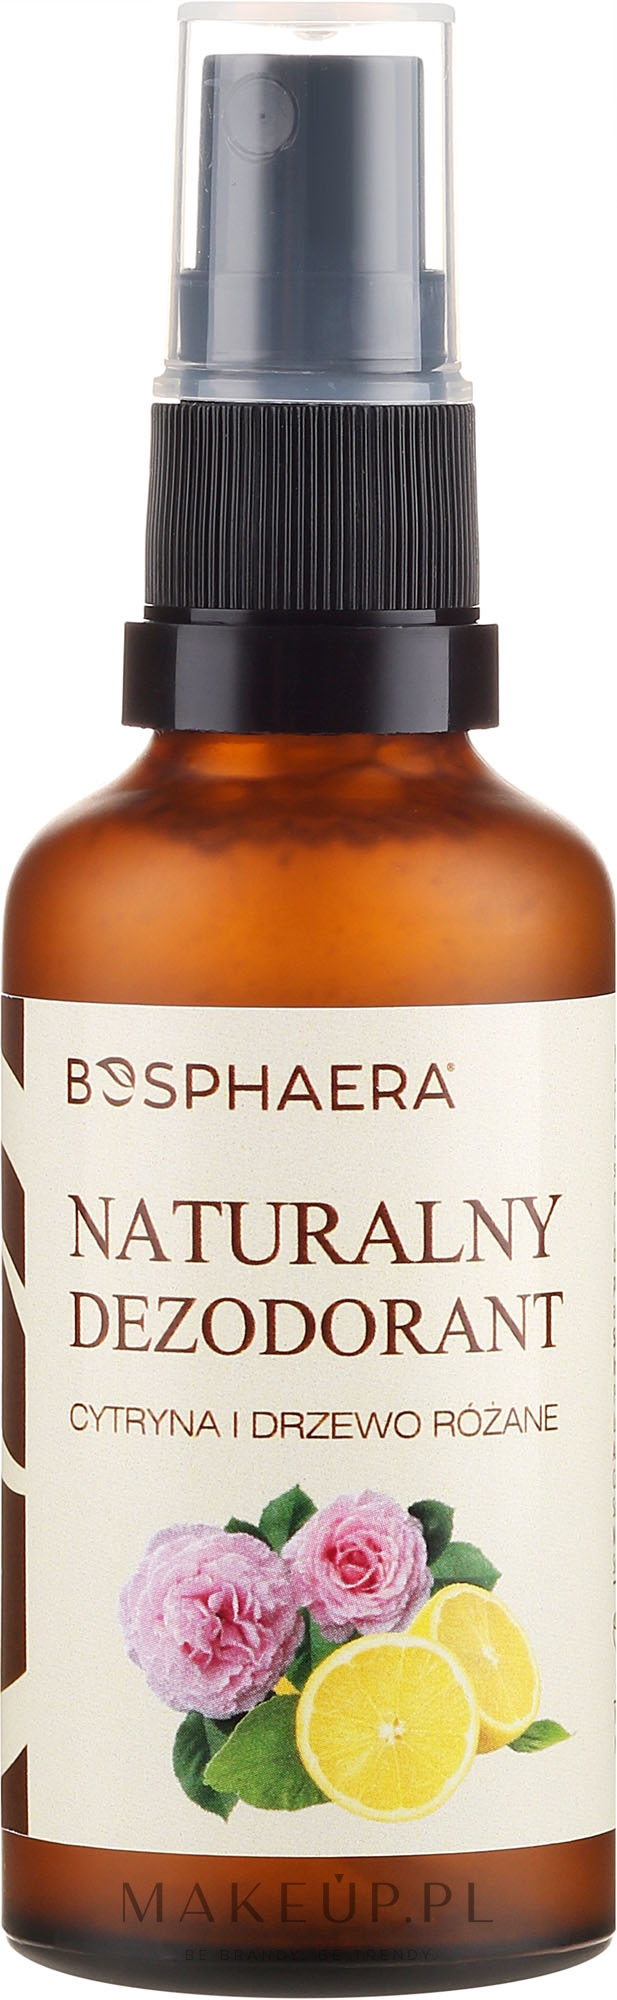 Naturalny dezodorant Cytryna i drzewo różane - Bosphaera — Zdjęcie 50 g